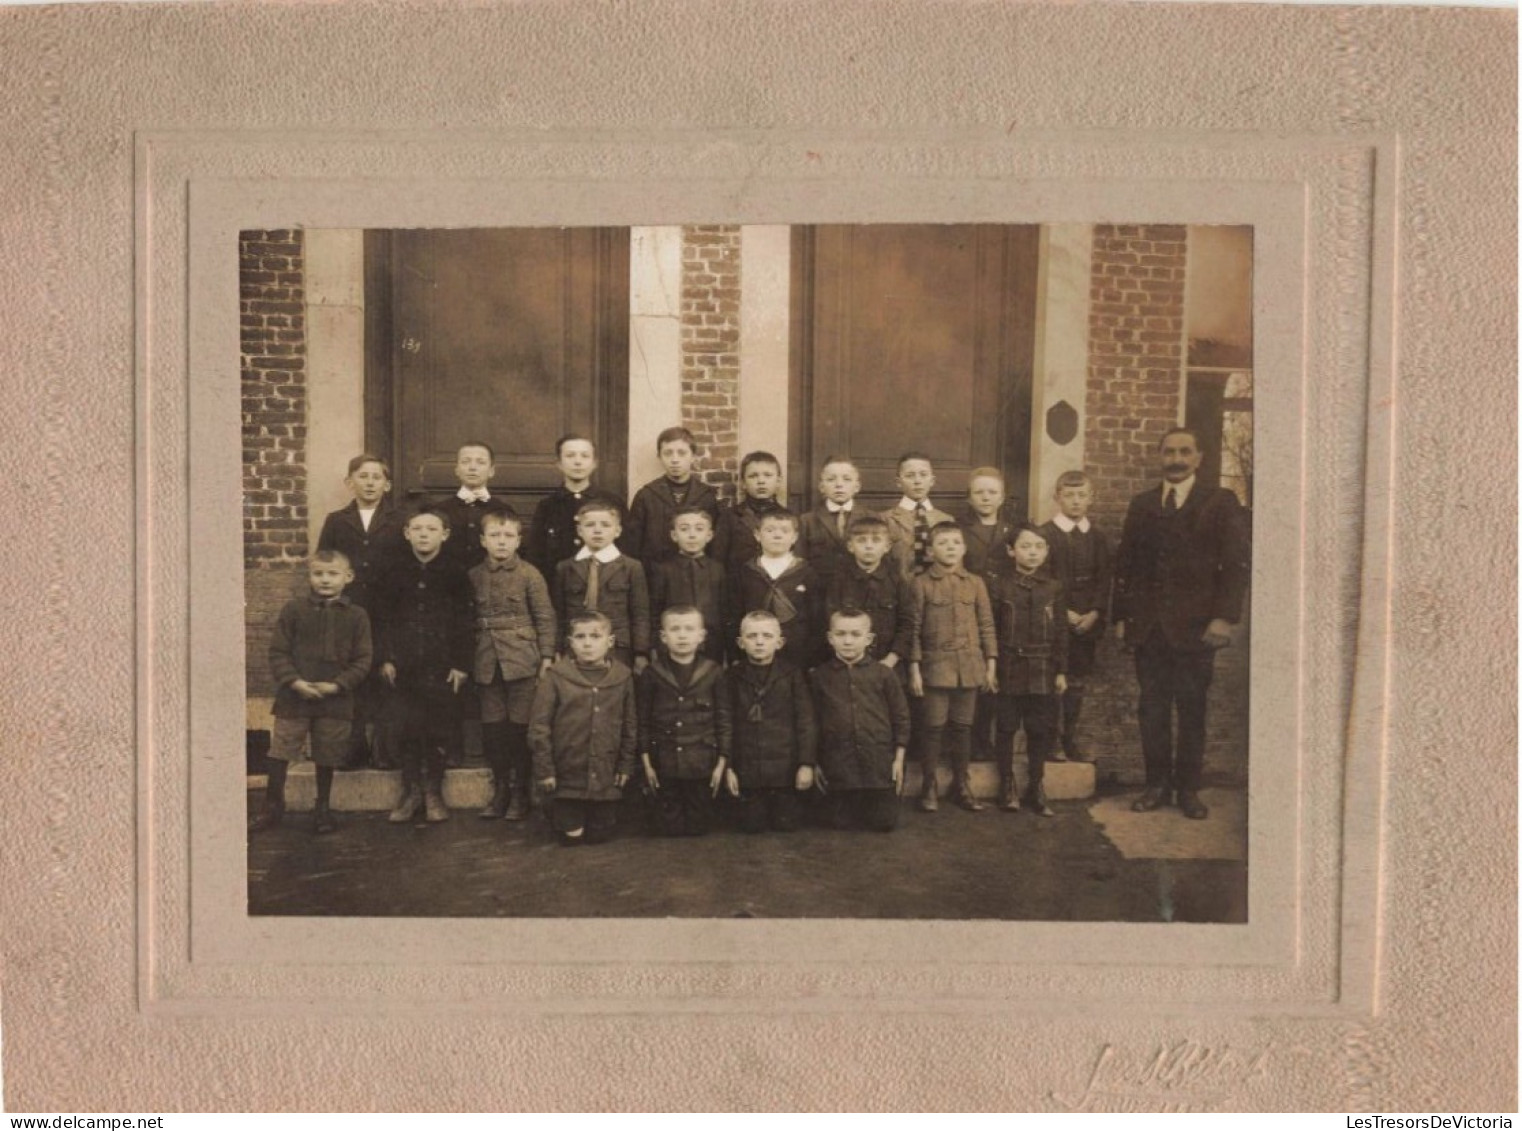 Photographie - Photo De Classe Limont 1924 25 26 - Dim 16,5/12 Cm Collé Sur Carton - Personnes Identifiées